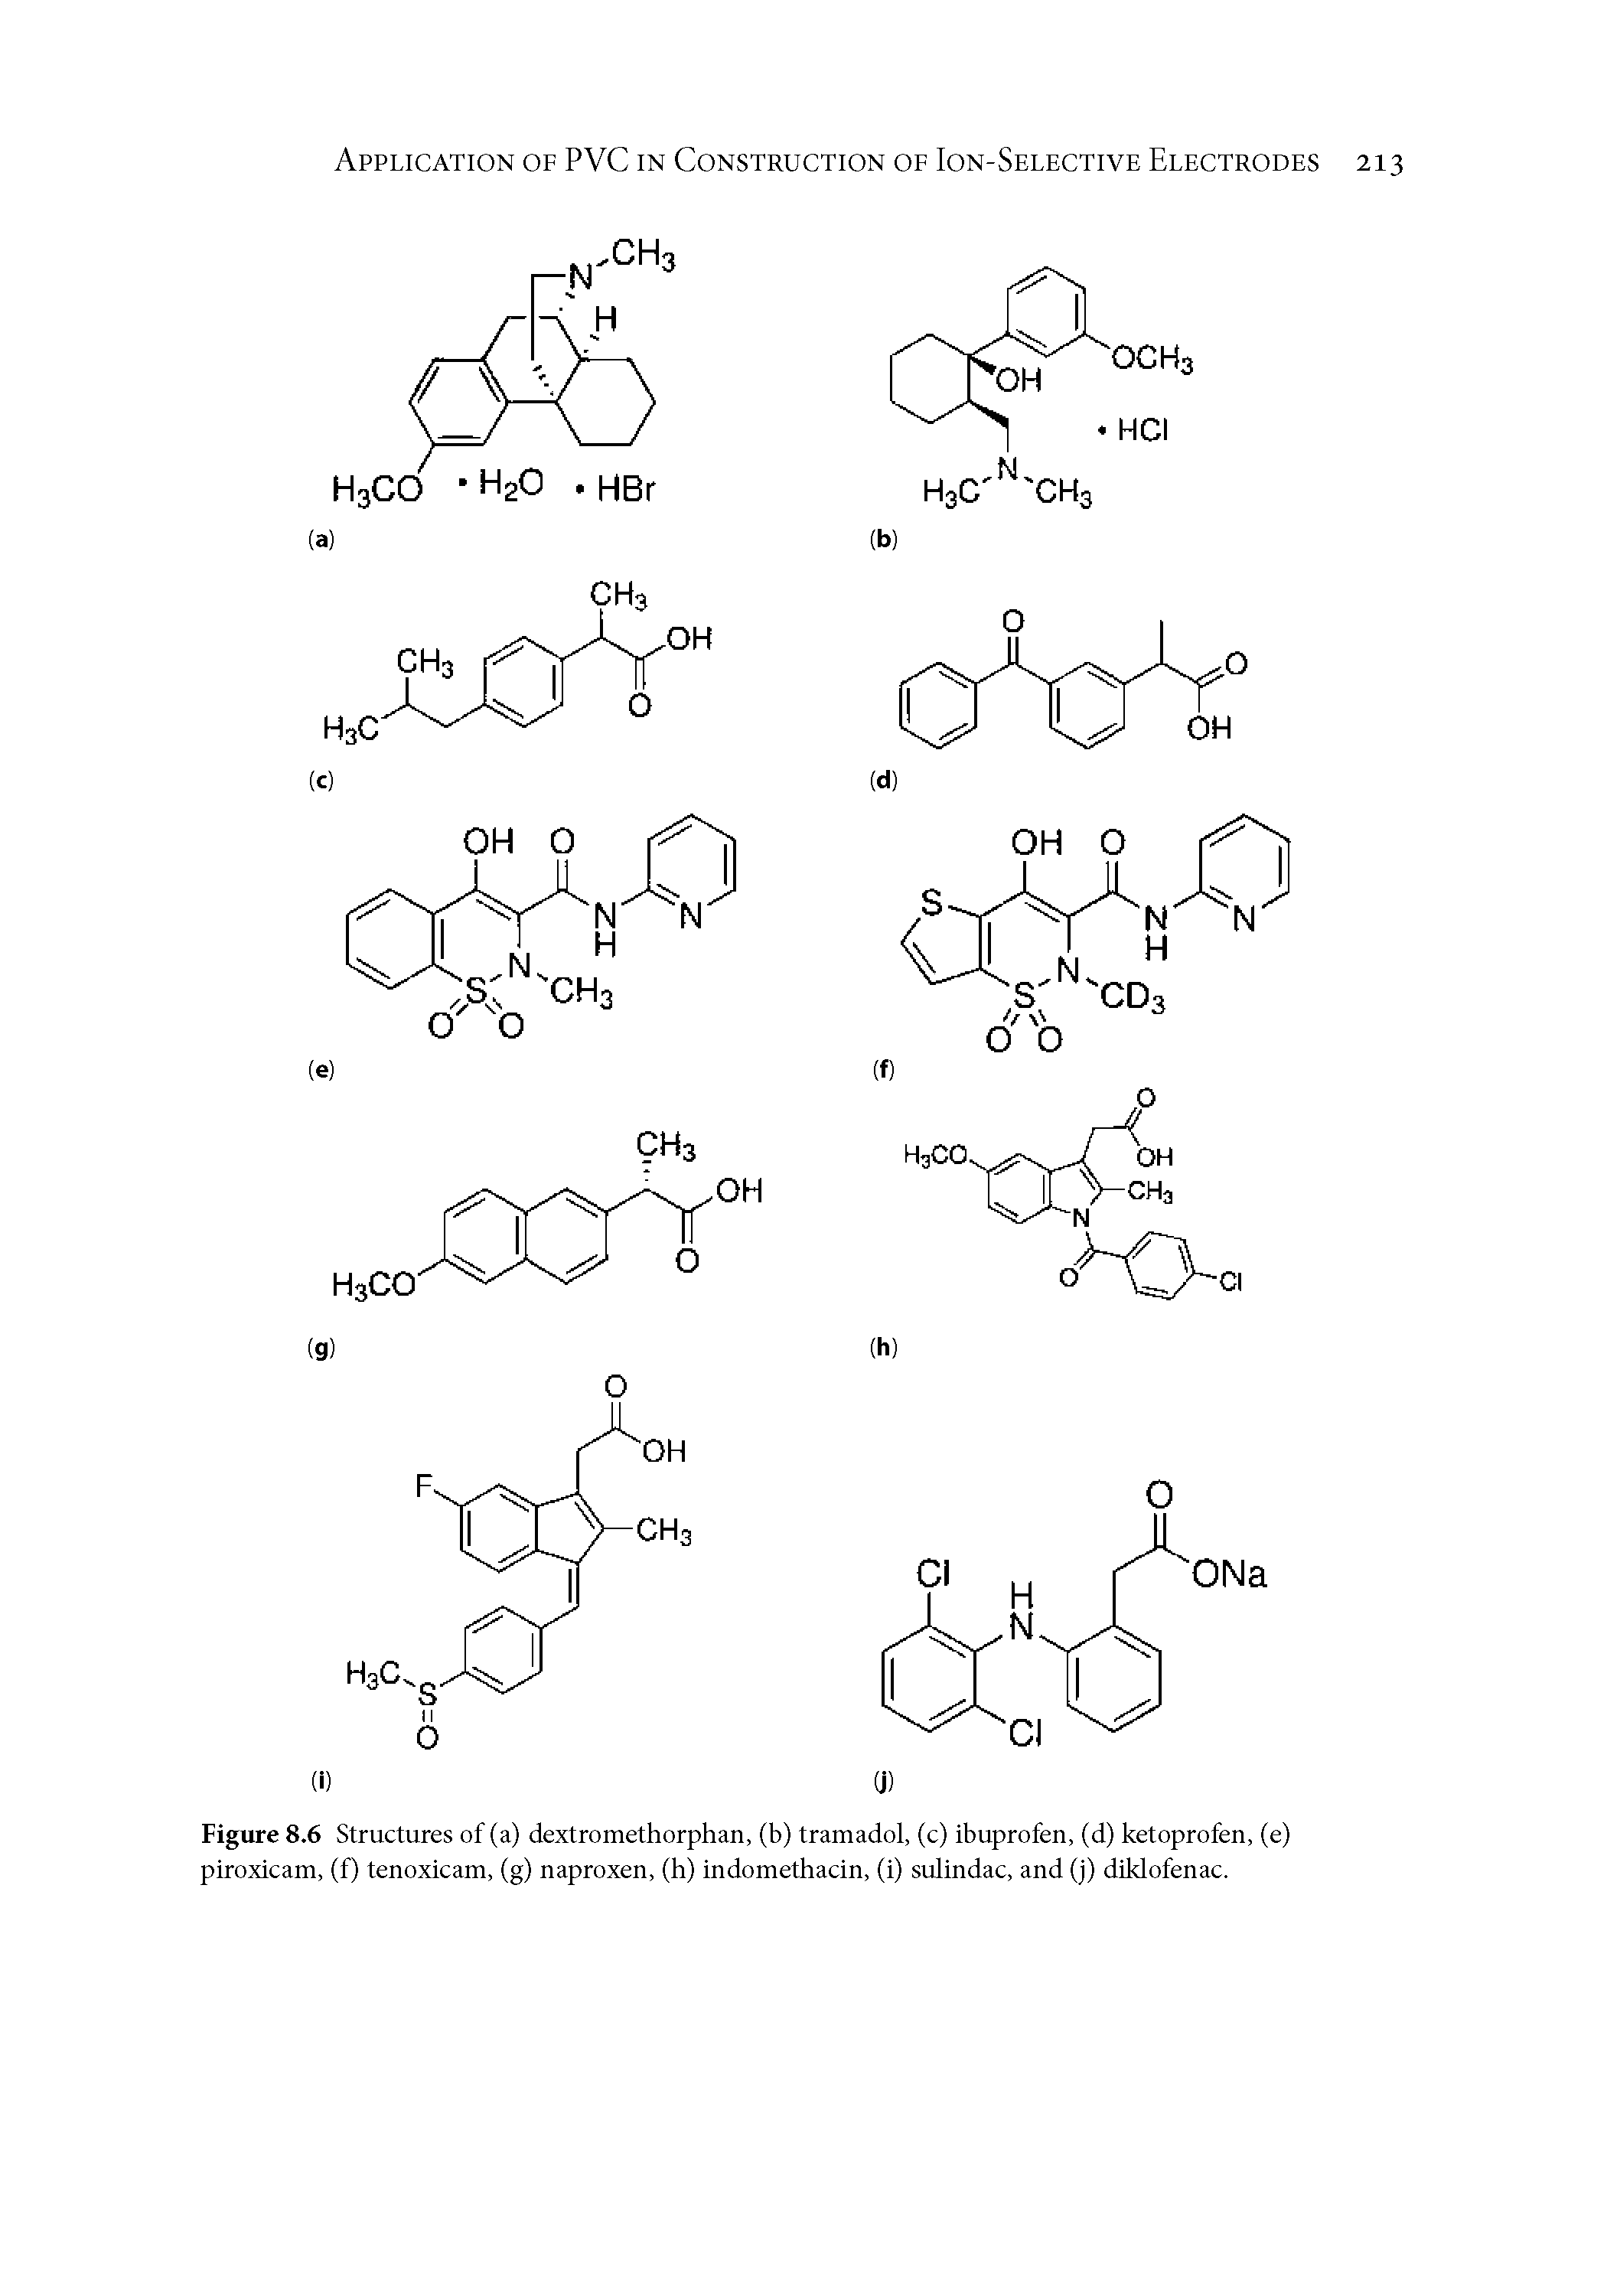 Figure 8.6 Structures of (a) dextromethorphan, (b) tramadol, (c) ibuprofen, (d) ketoprofen, (e) piroxicam, (f) tenoxicam, (g) naproxen, (h) indomethacin, (i) sulindac, and (j) diklofenac.